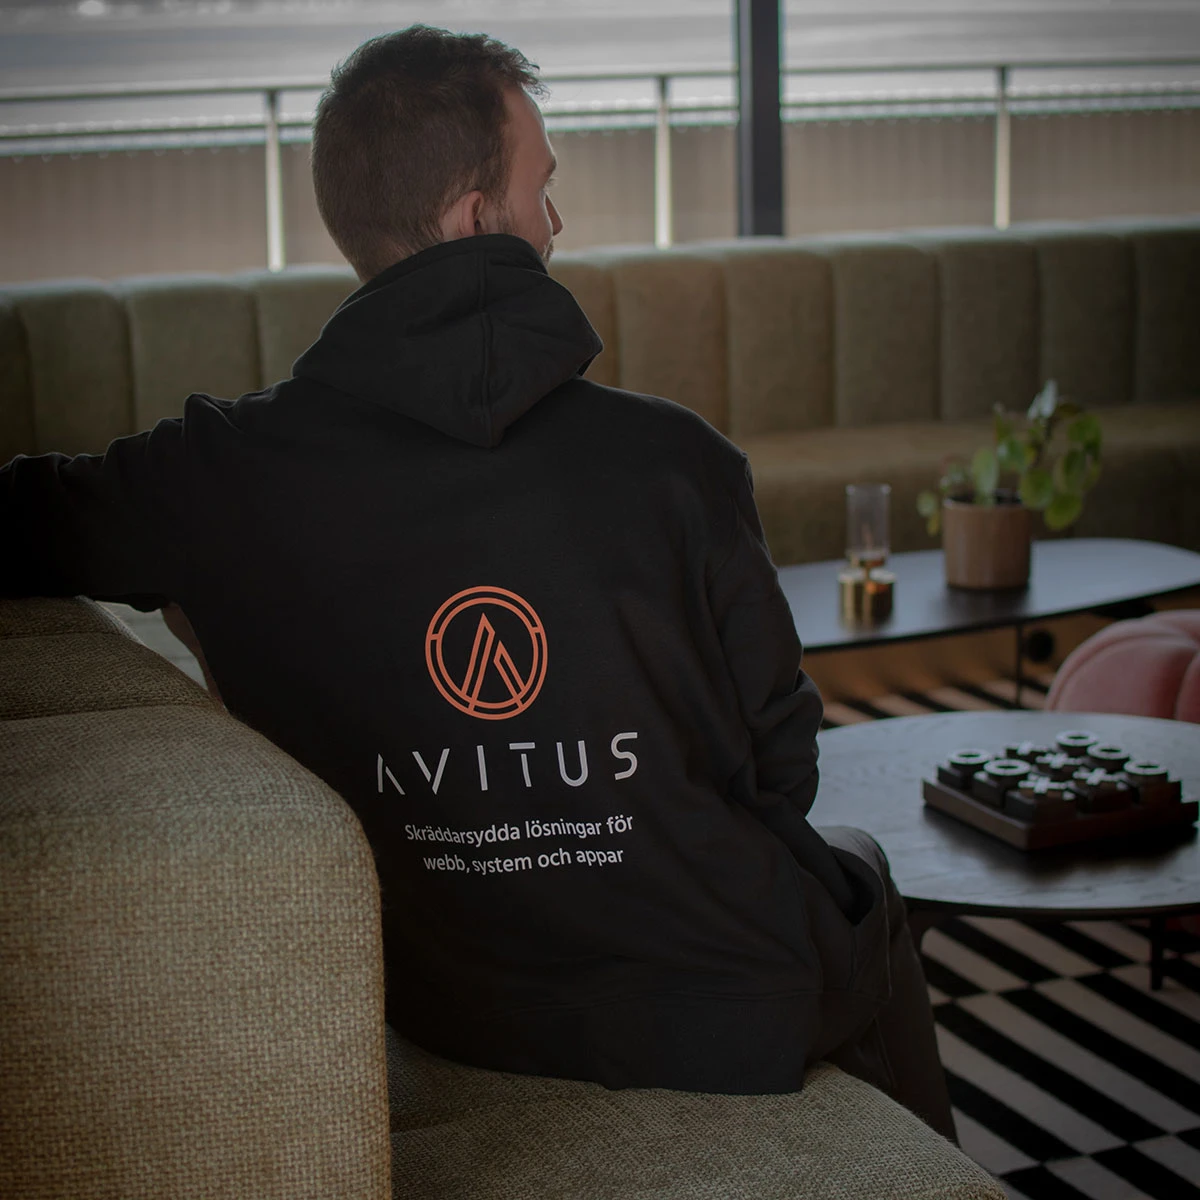 Bild på Christoffer, grundare av Avitus, bakifrån när han har en tröja med texten "Avitus, Skräddarsydda lösningar för webb, system och appar"